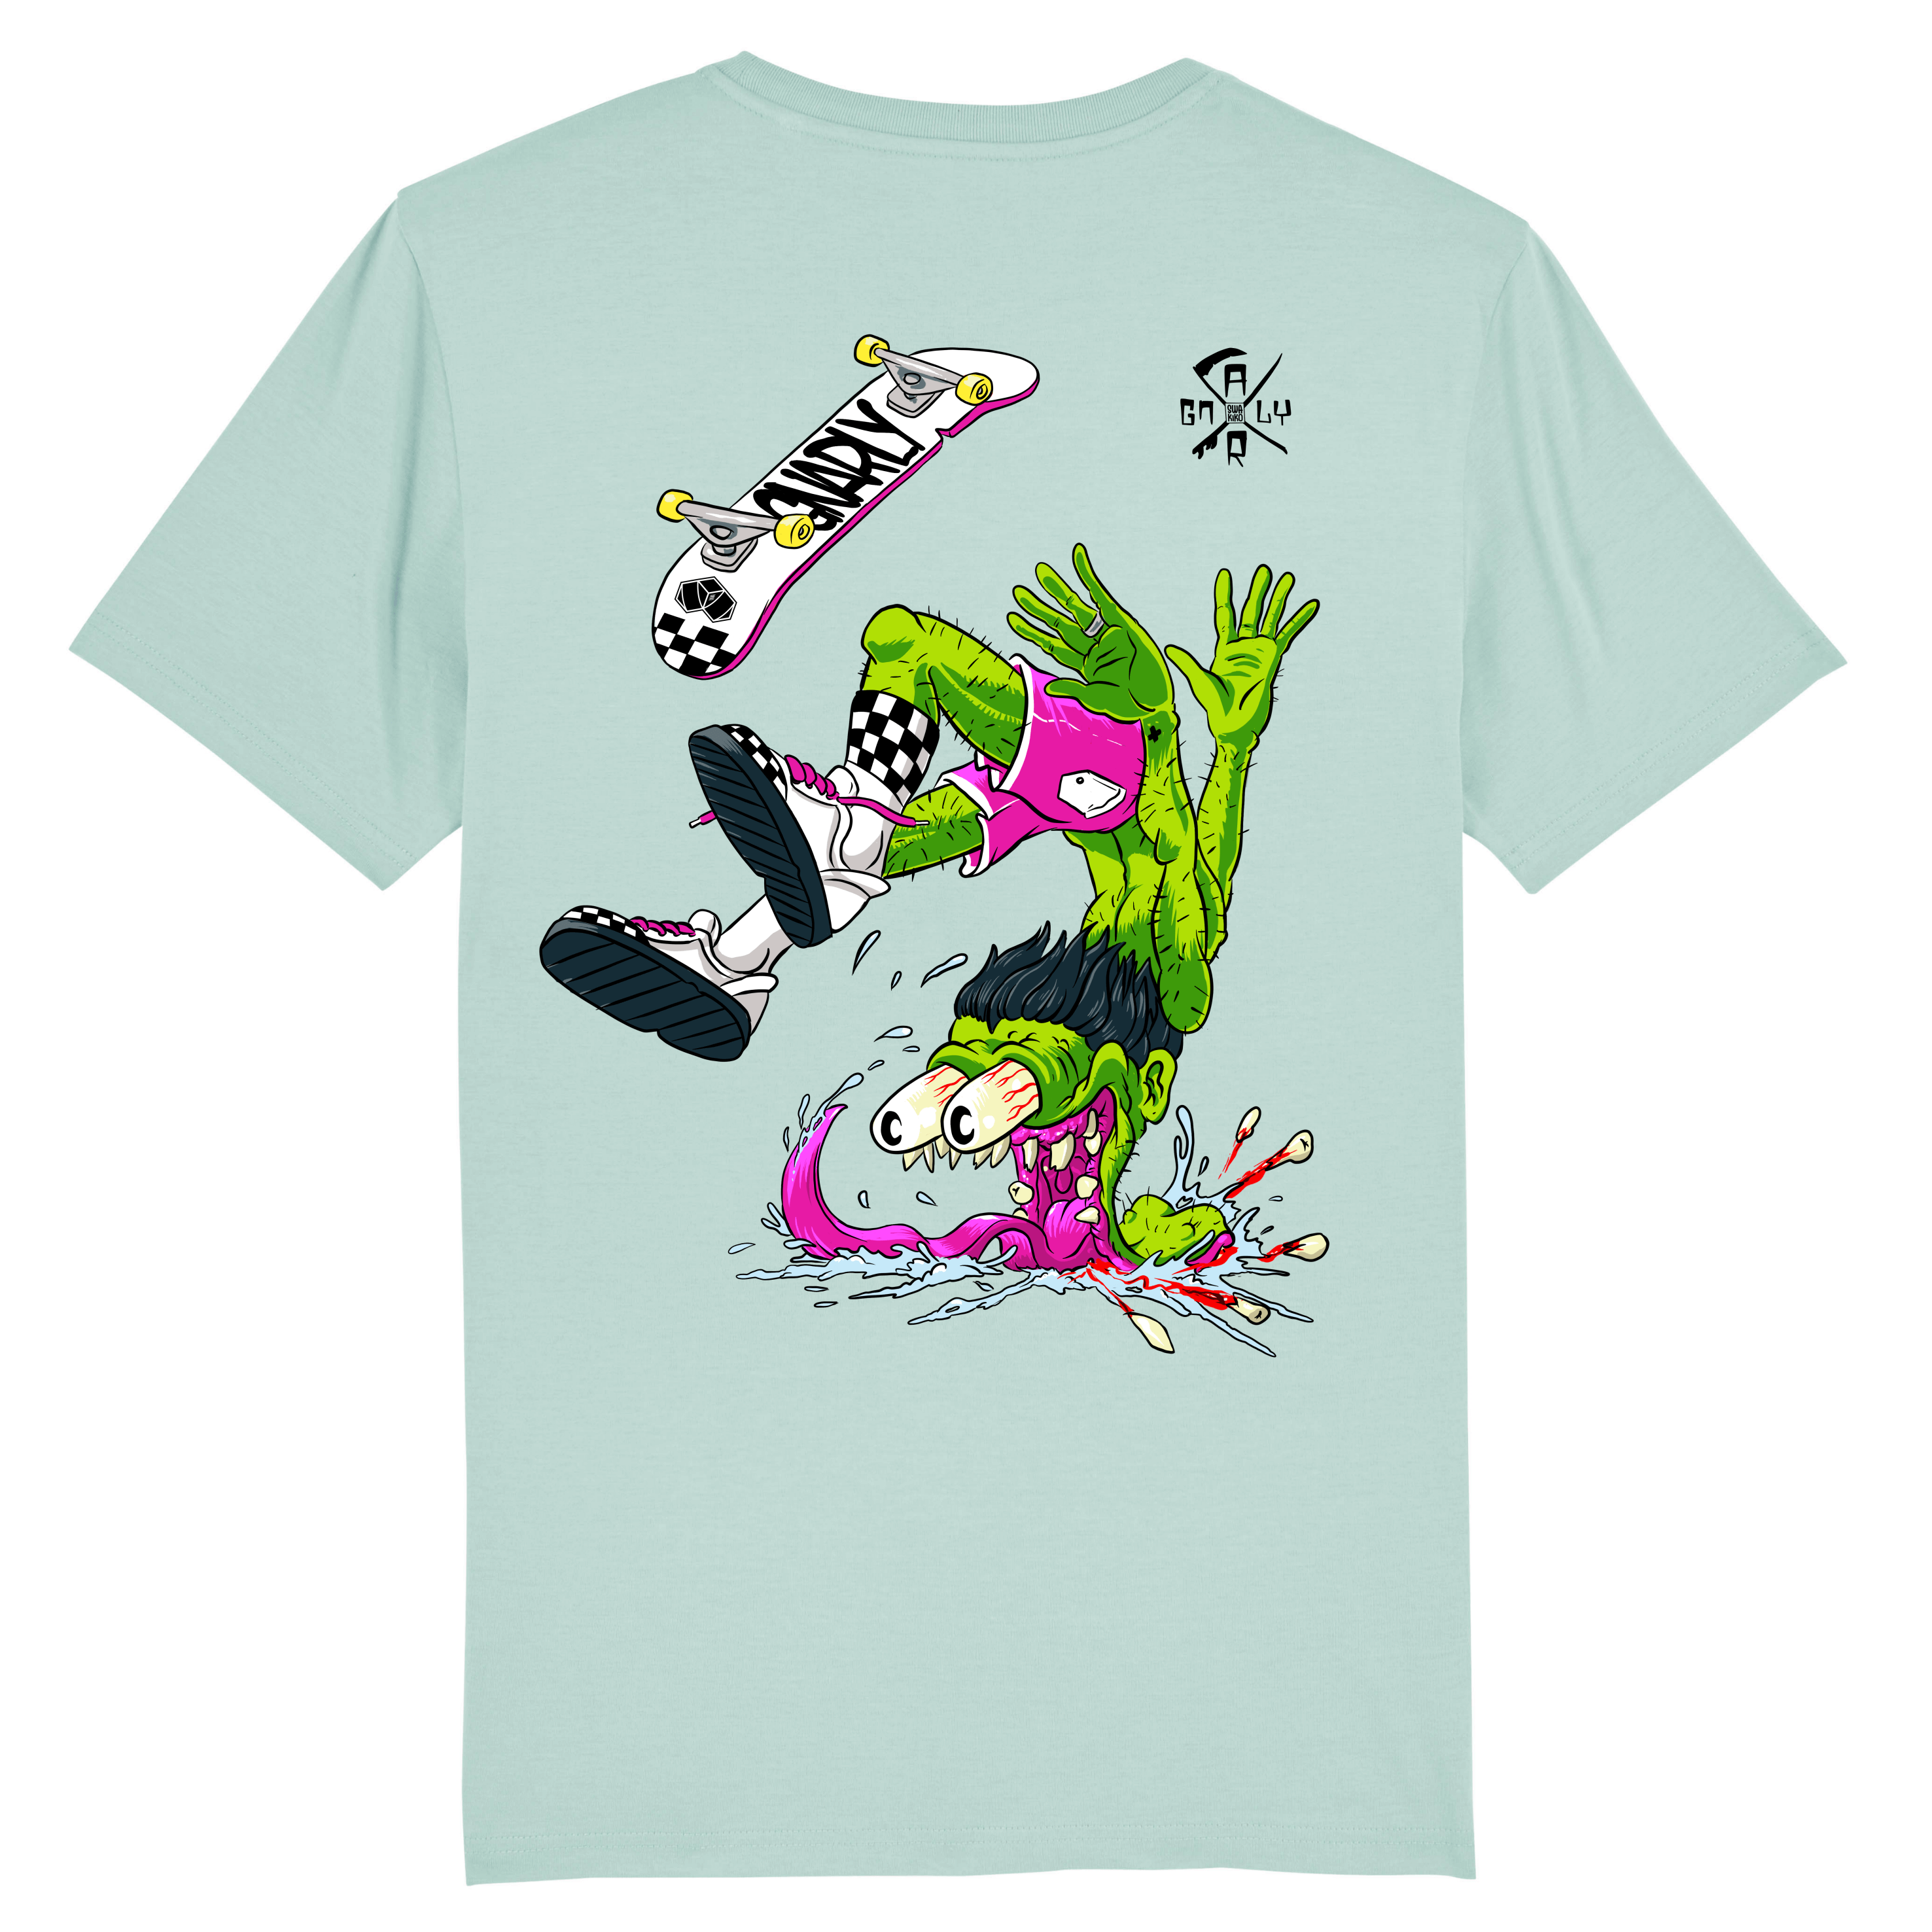 Turquoise skate t-shirt met een skater die een Big Flip doet en hard valt 